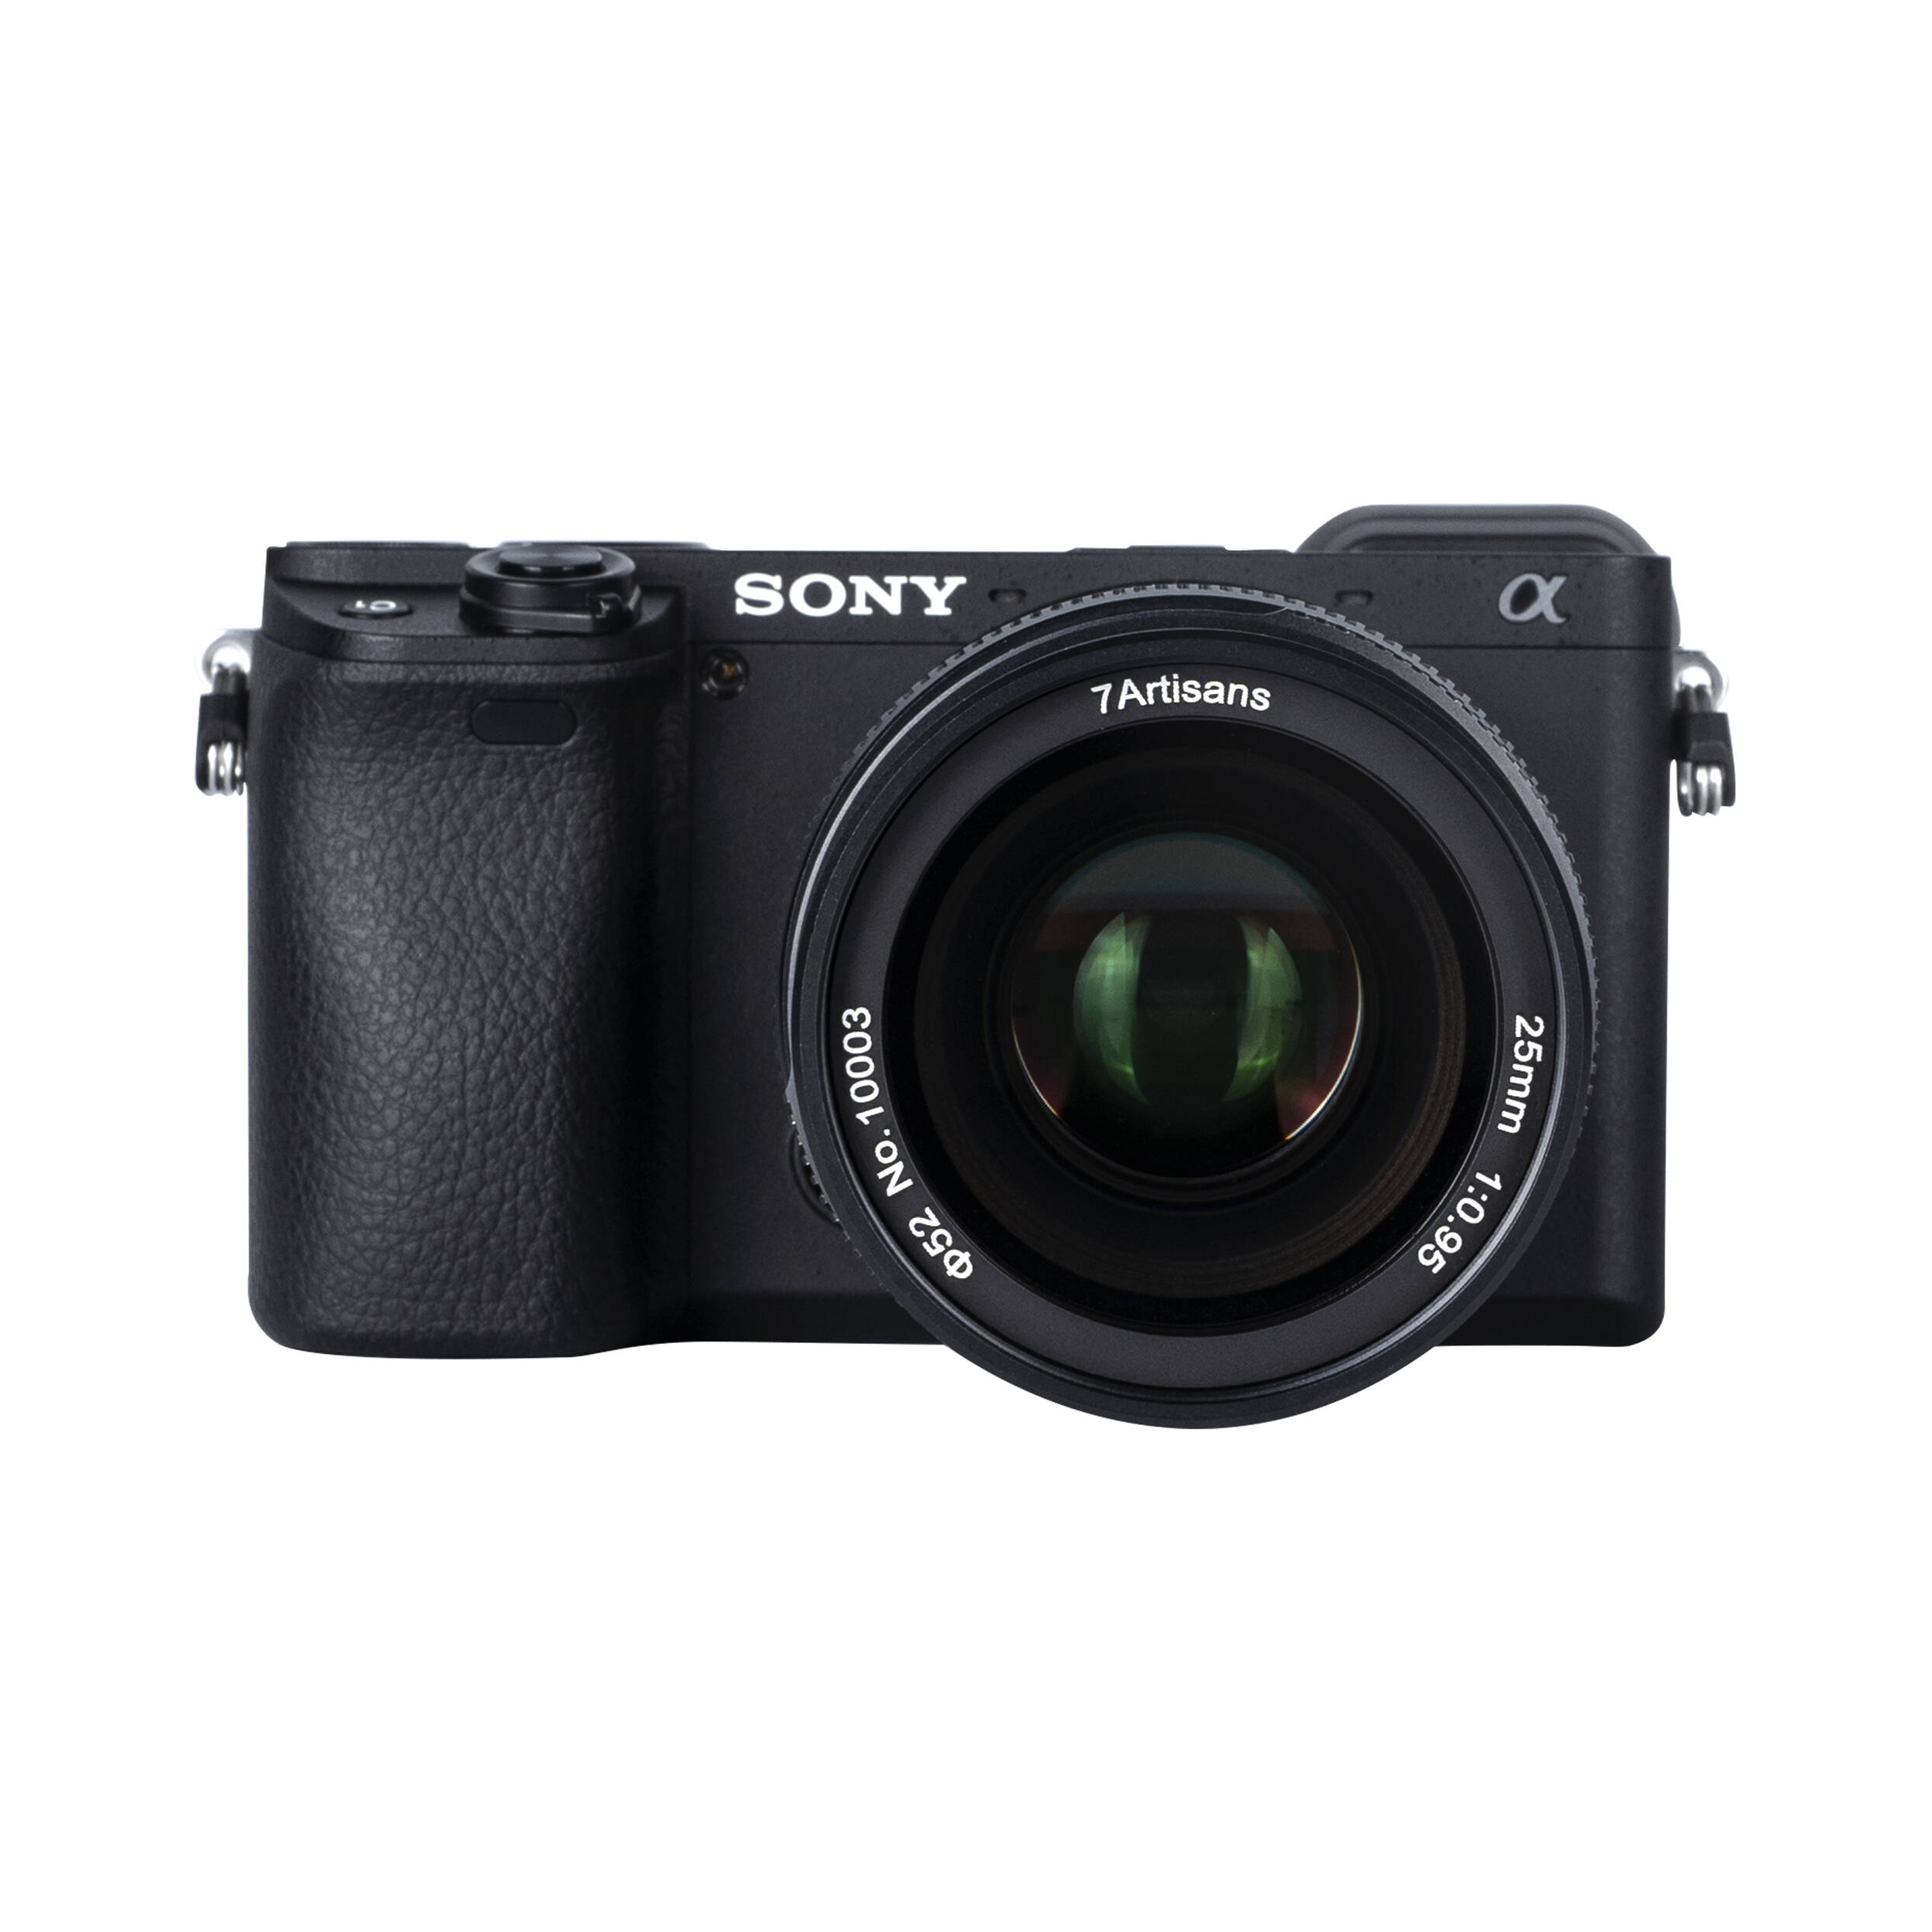 7artisans photoélectrique 25 mm f / 0,95 objectif pour le support Sony E